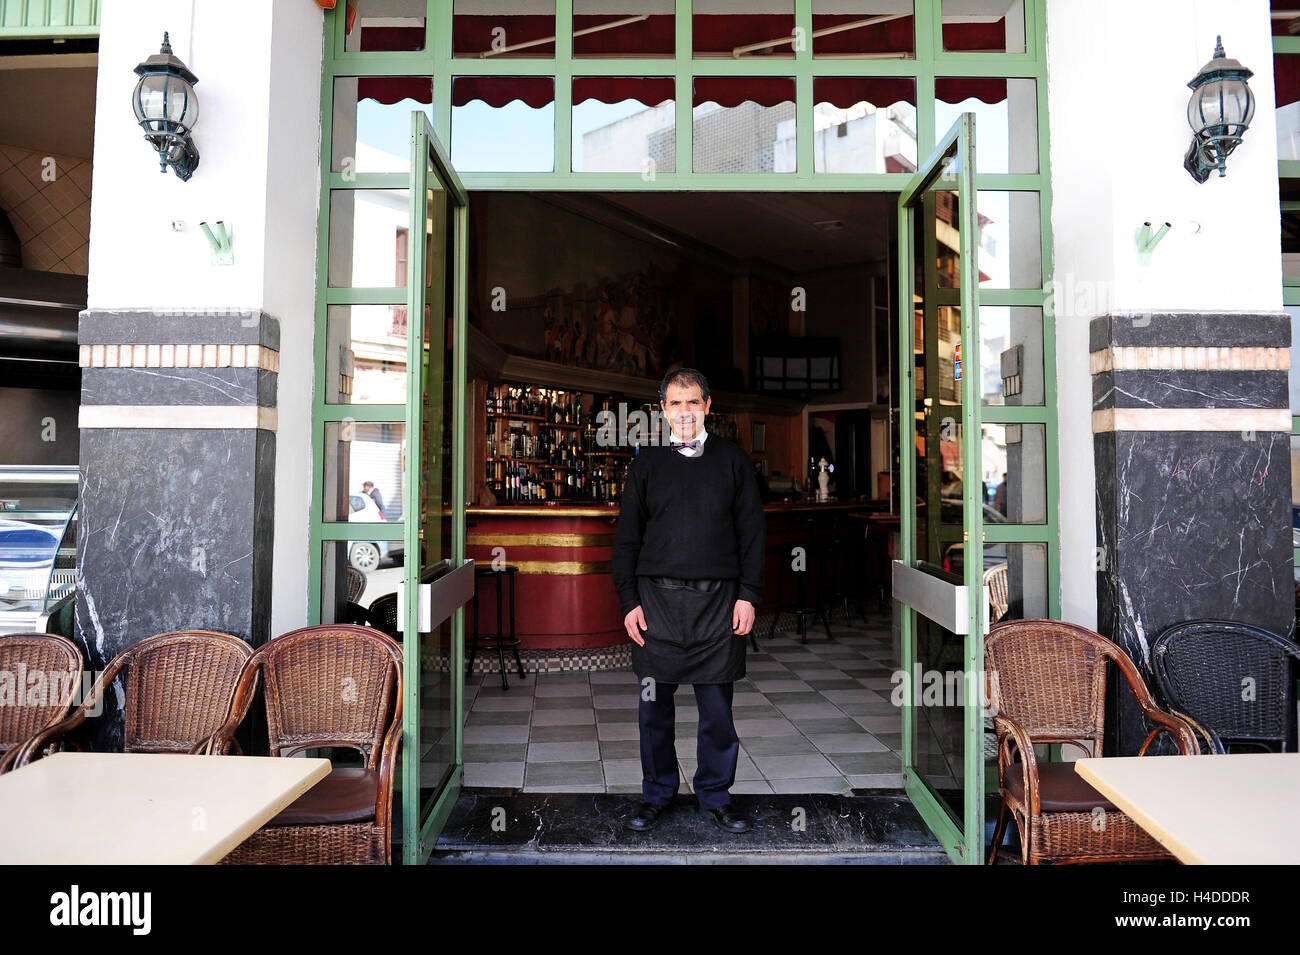 Un Garcon A Sa Photo En Face D Un Cafe De Style Francais En Face Du Cinema Rialto De Casablanca Photo Stock Alamy